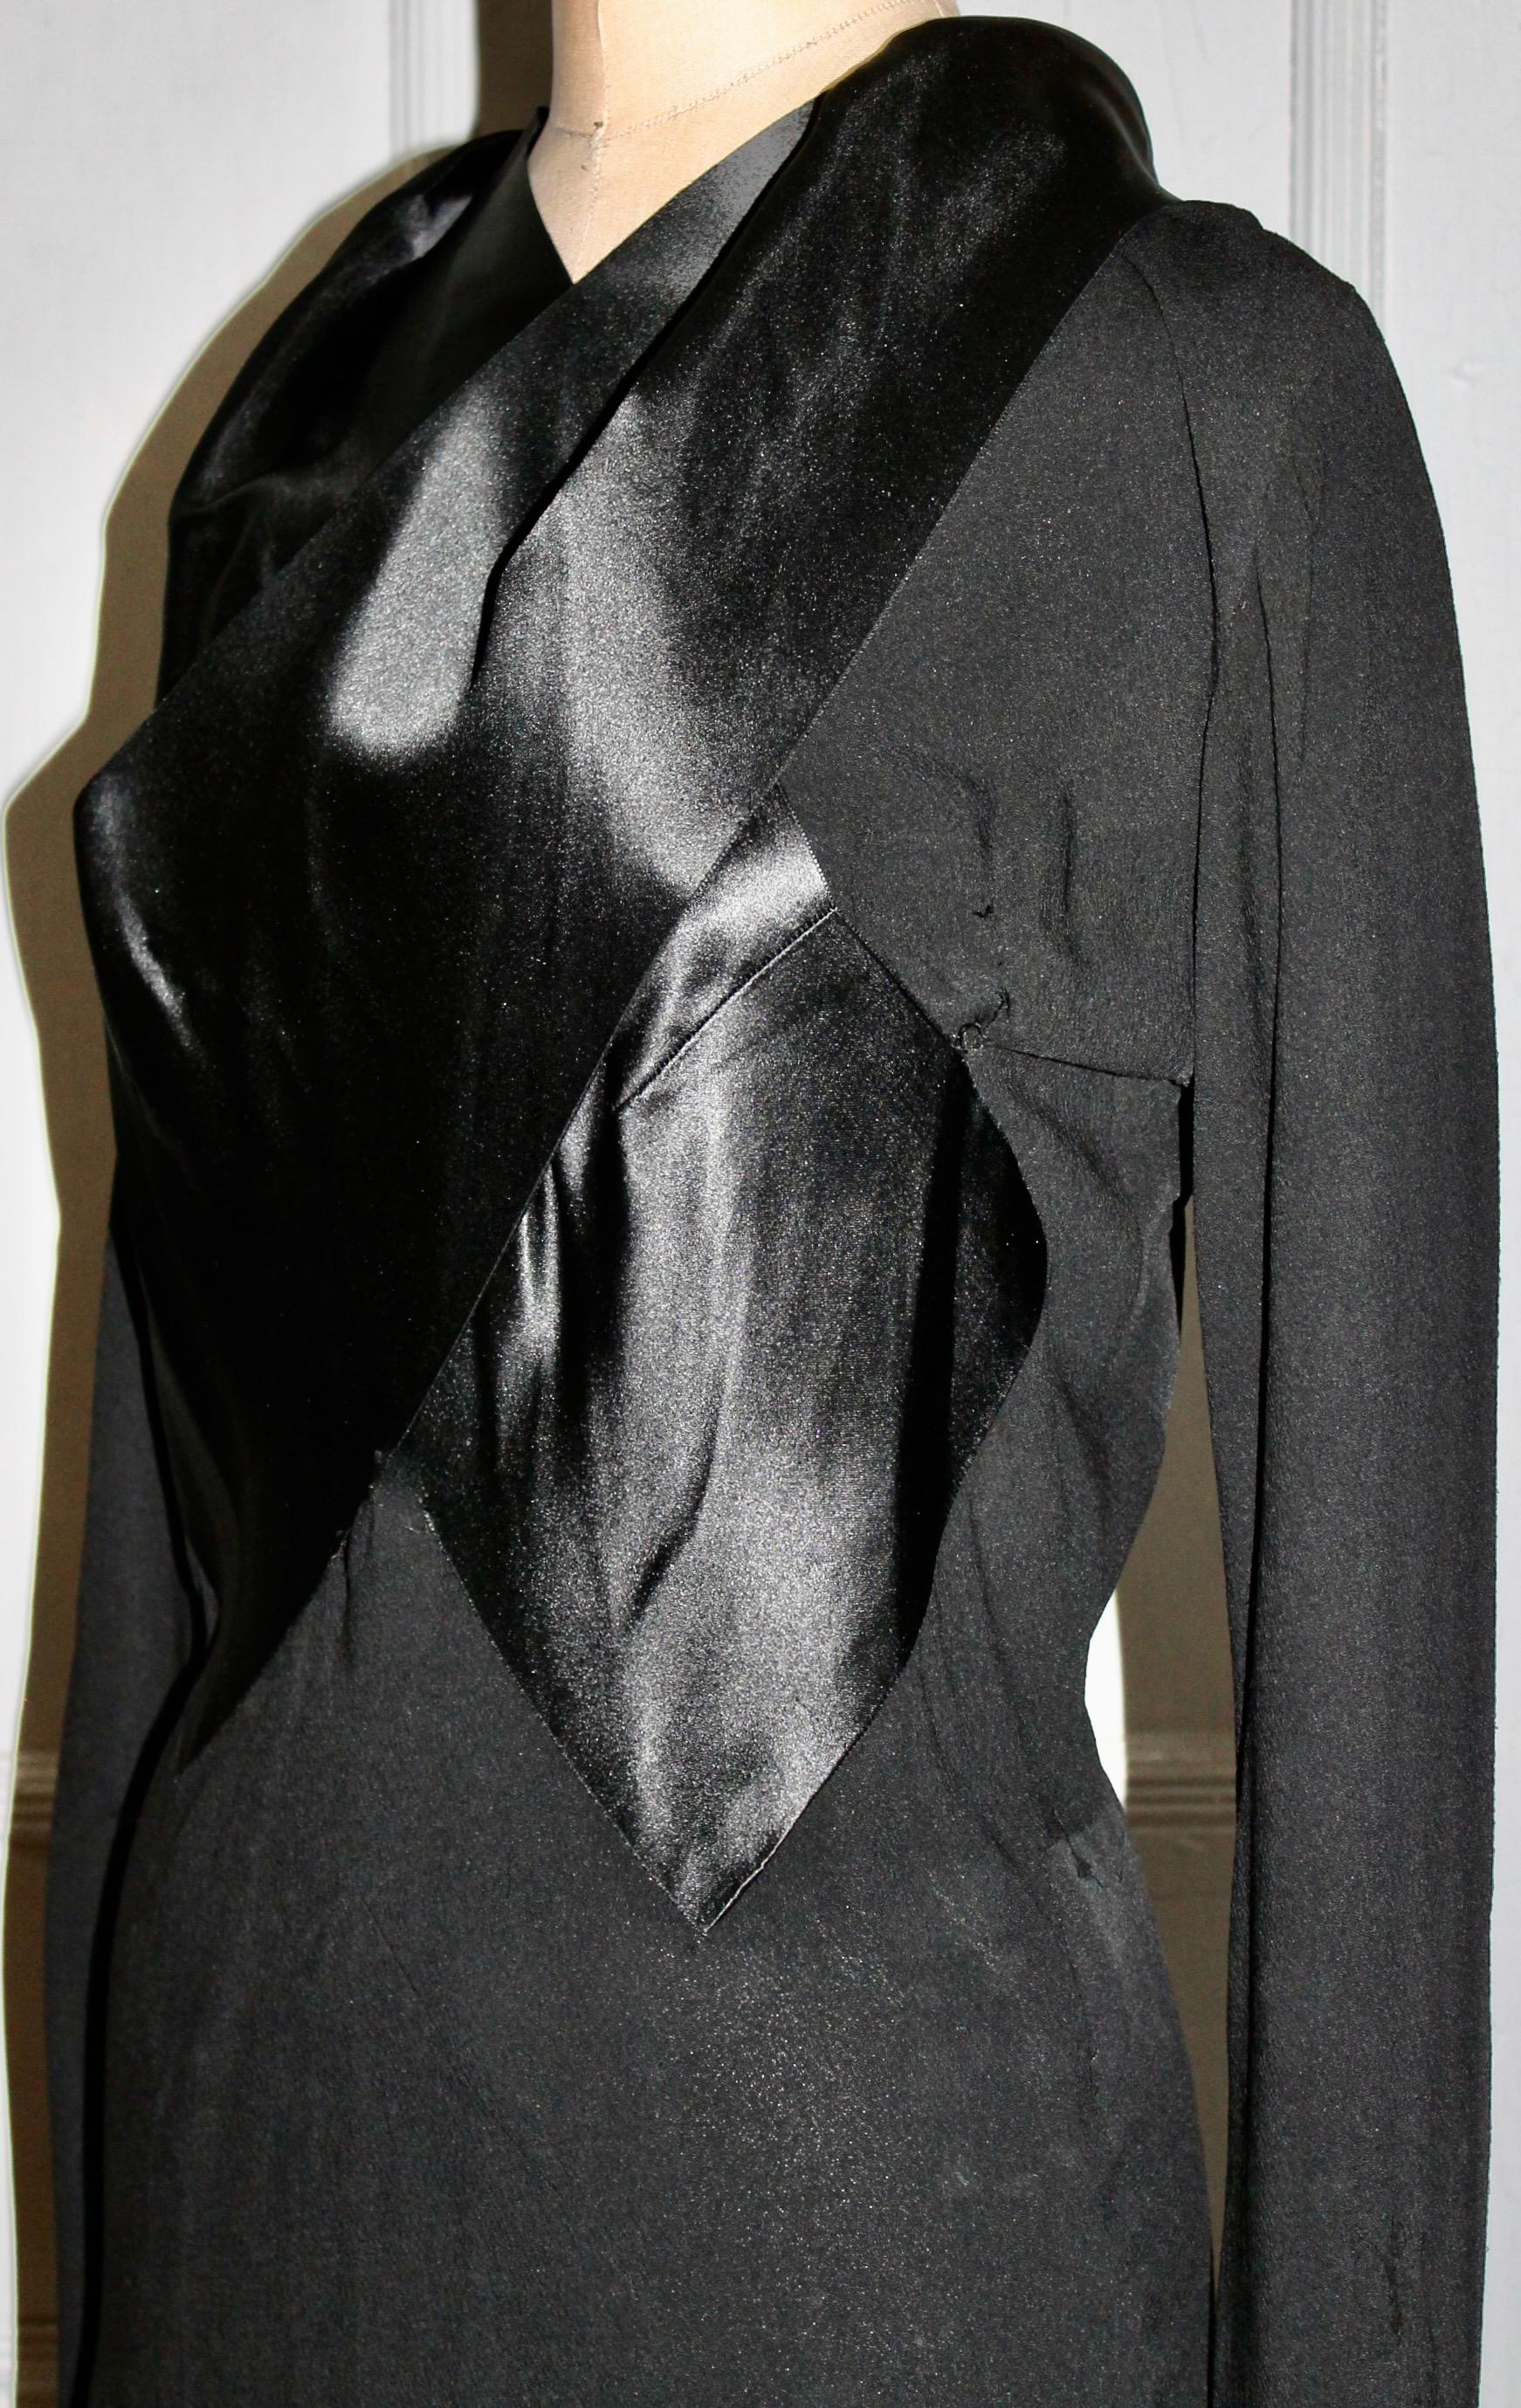 France Vramant Black Crepe Silk Evening Gown, 1930's Paris  For Sale 3